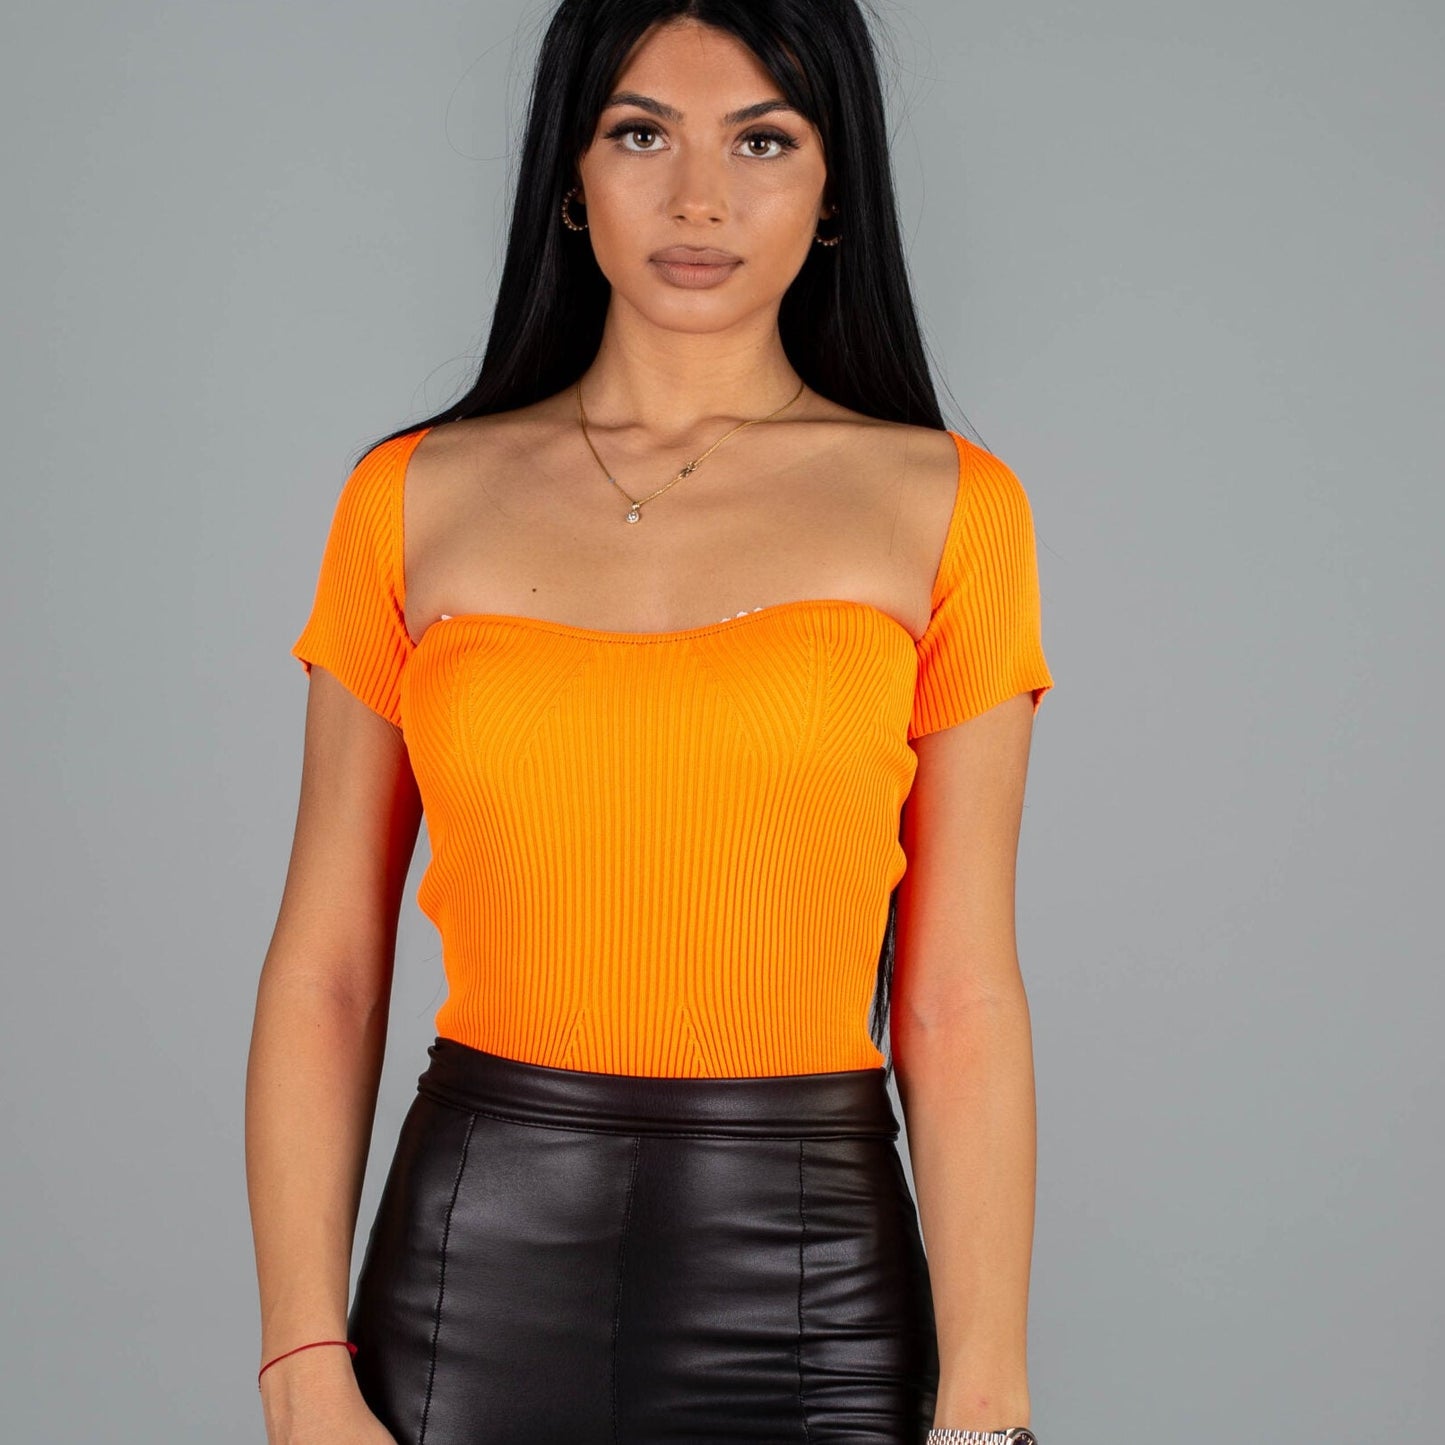 Дамска блуза CORSET  https://bvseductive.com/products/дамска-блуза-corset-3  100 % вискоза стилна дамска блуза в оранжев цвят&nbsp; с изчистен класически дизайн&nbsp; секси деколте и къс ръкав&nbsp; чудесен избор за модерна визия